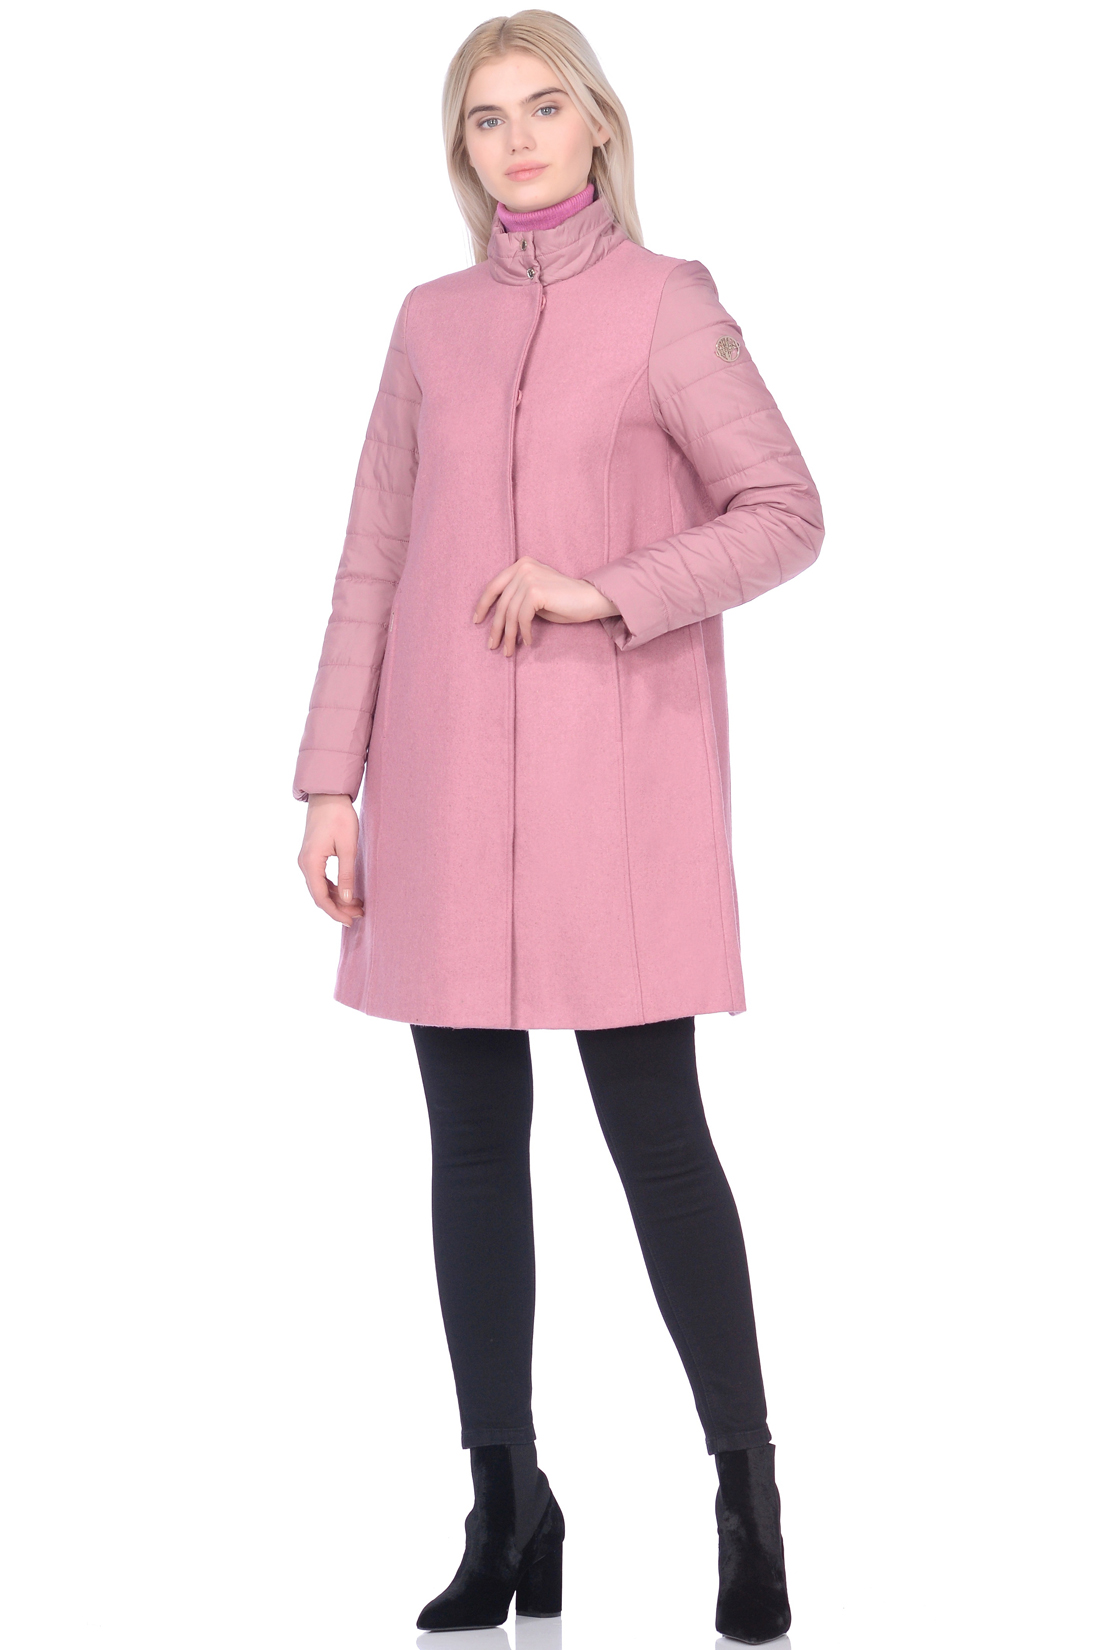 Пальто из комбинированных материалов (арт. baon B069004), размер XL, цвет розовый